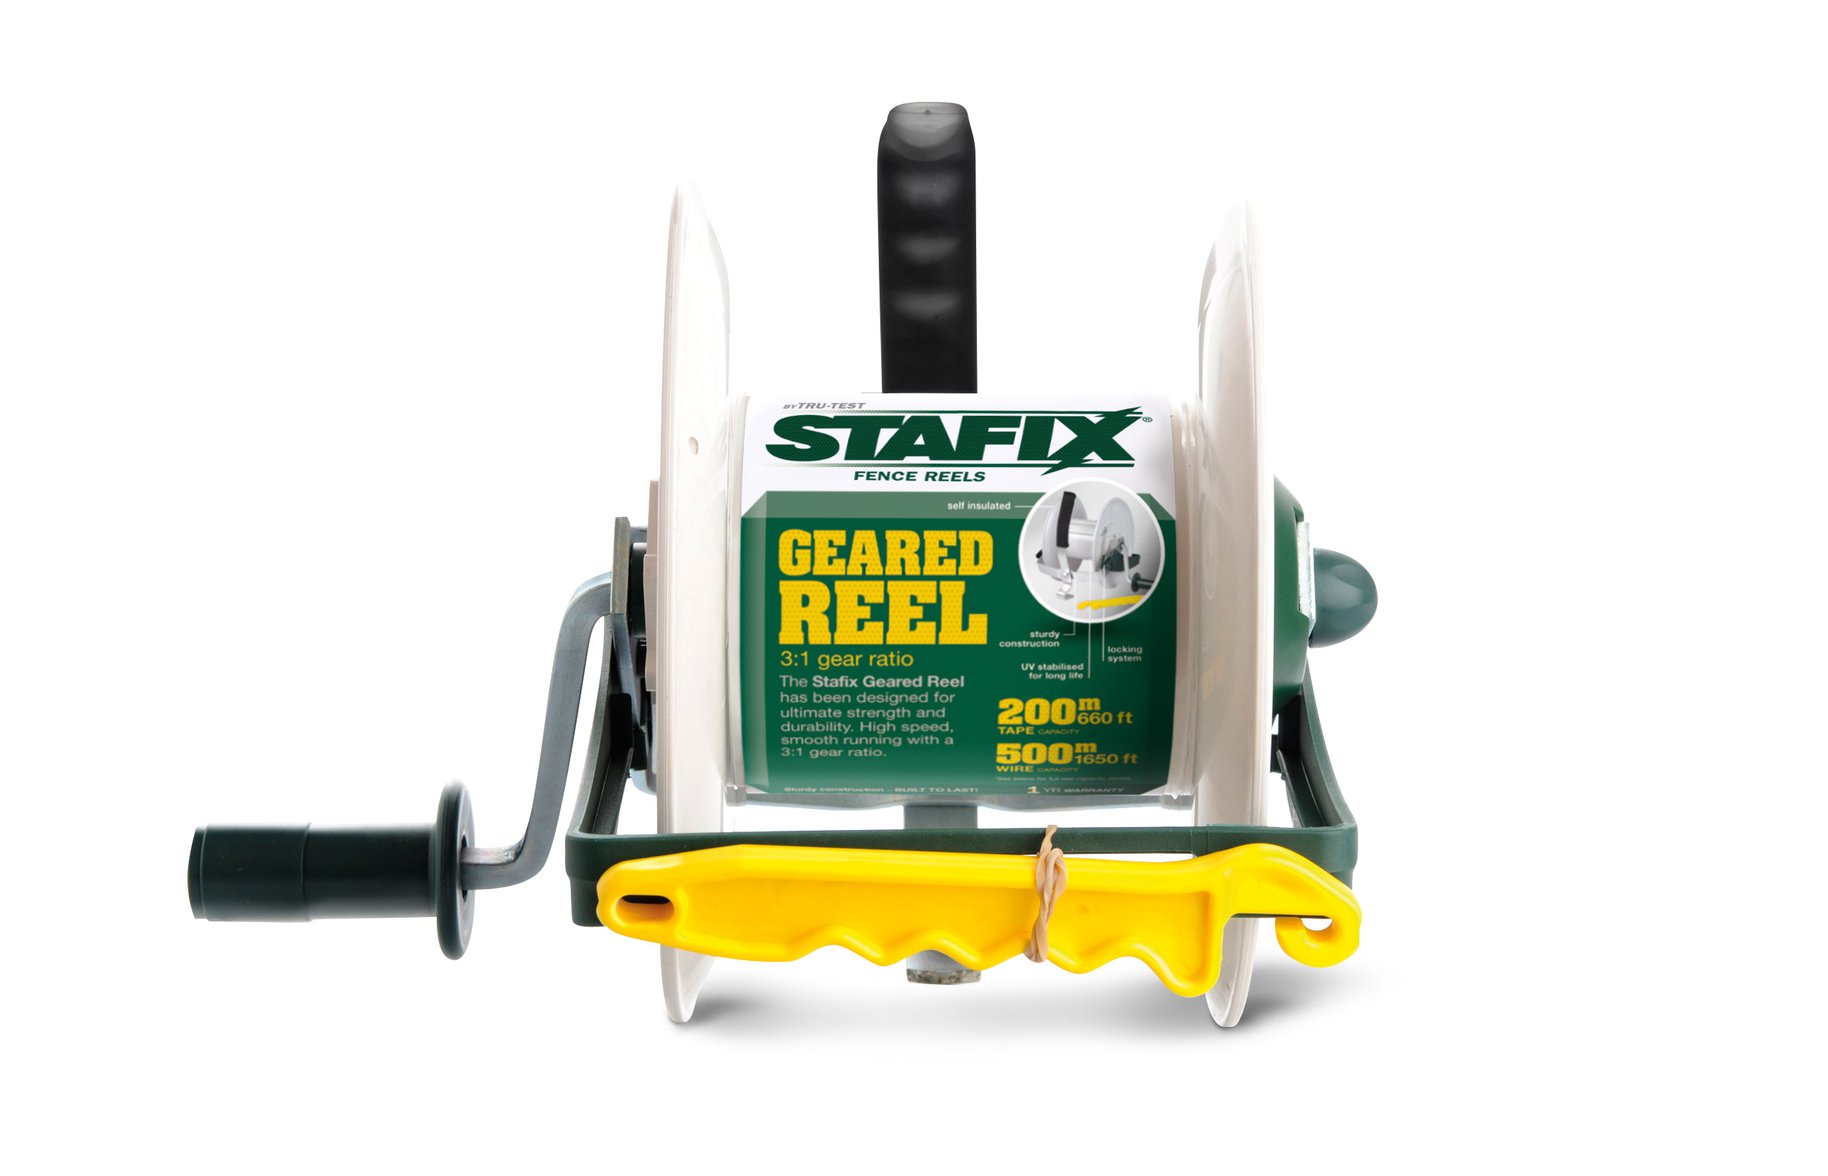 Stafix geared reel packaging 